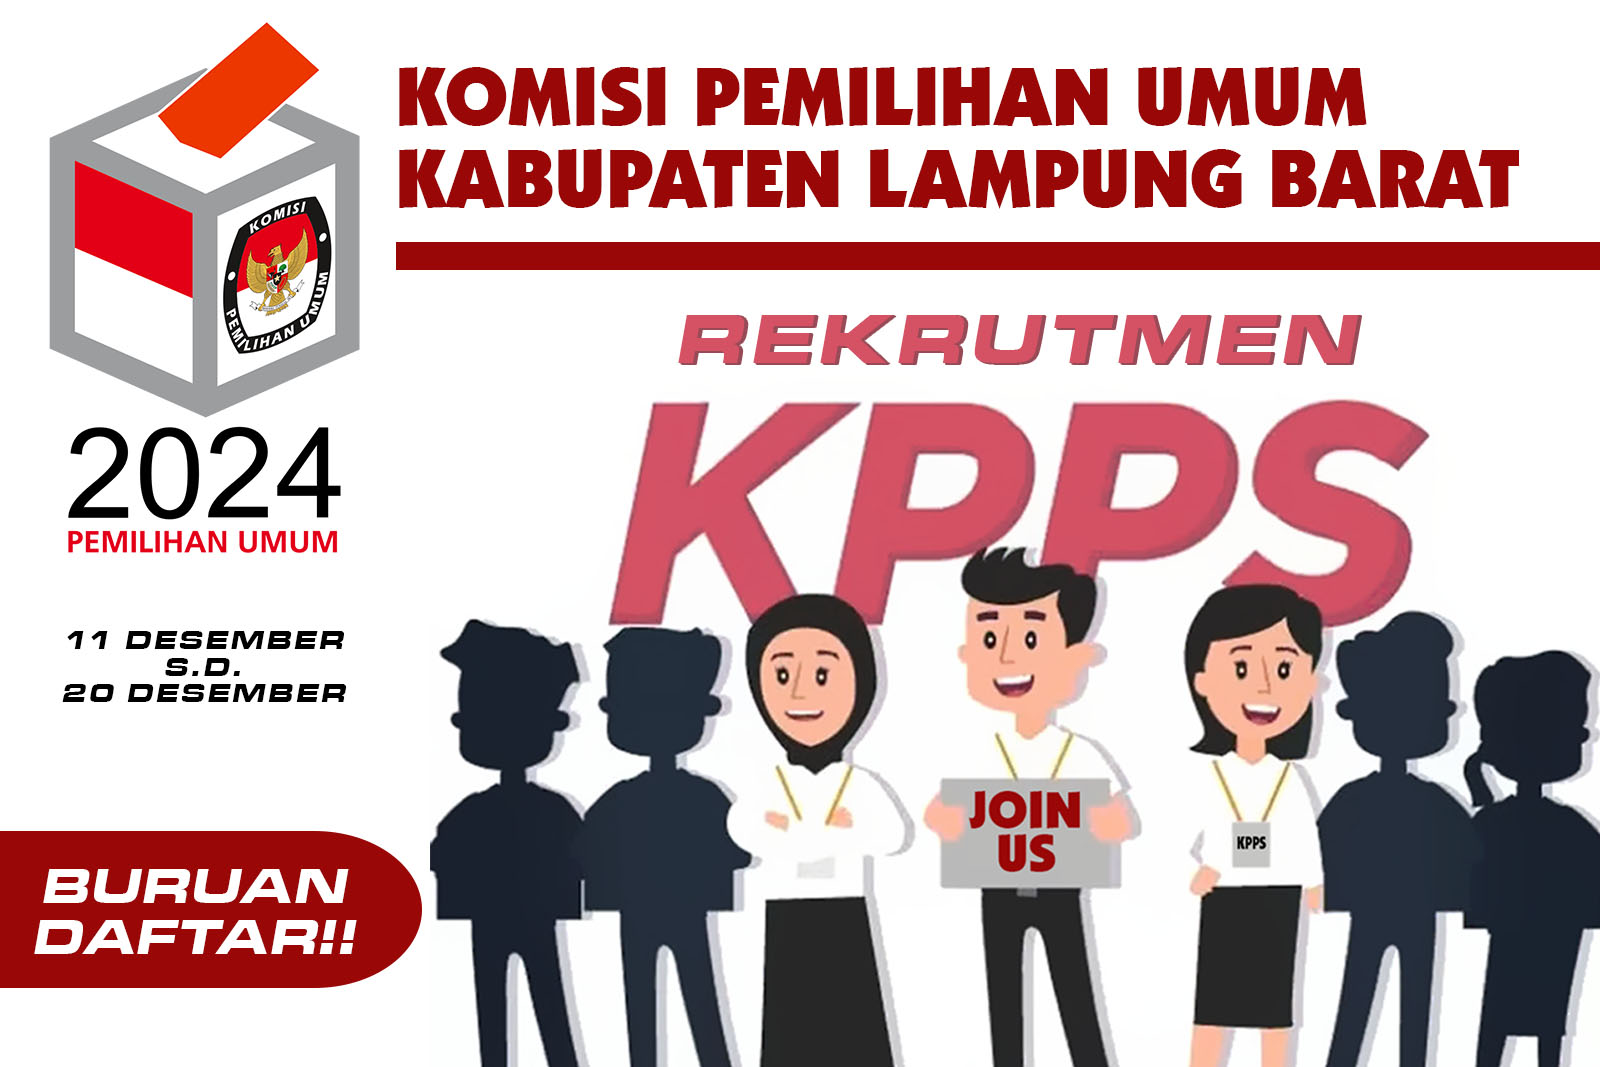 Rekrut 6.874 KPPS, KPU Lampung Barat Tetapkan Sejumlah Syarat Ini Bagi Pendaftar 